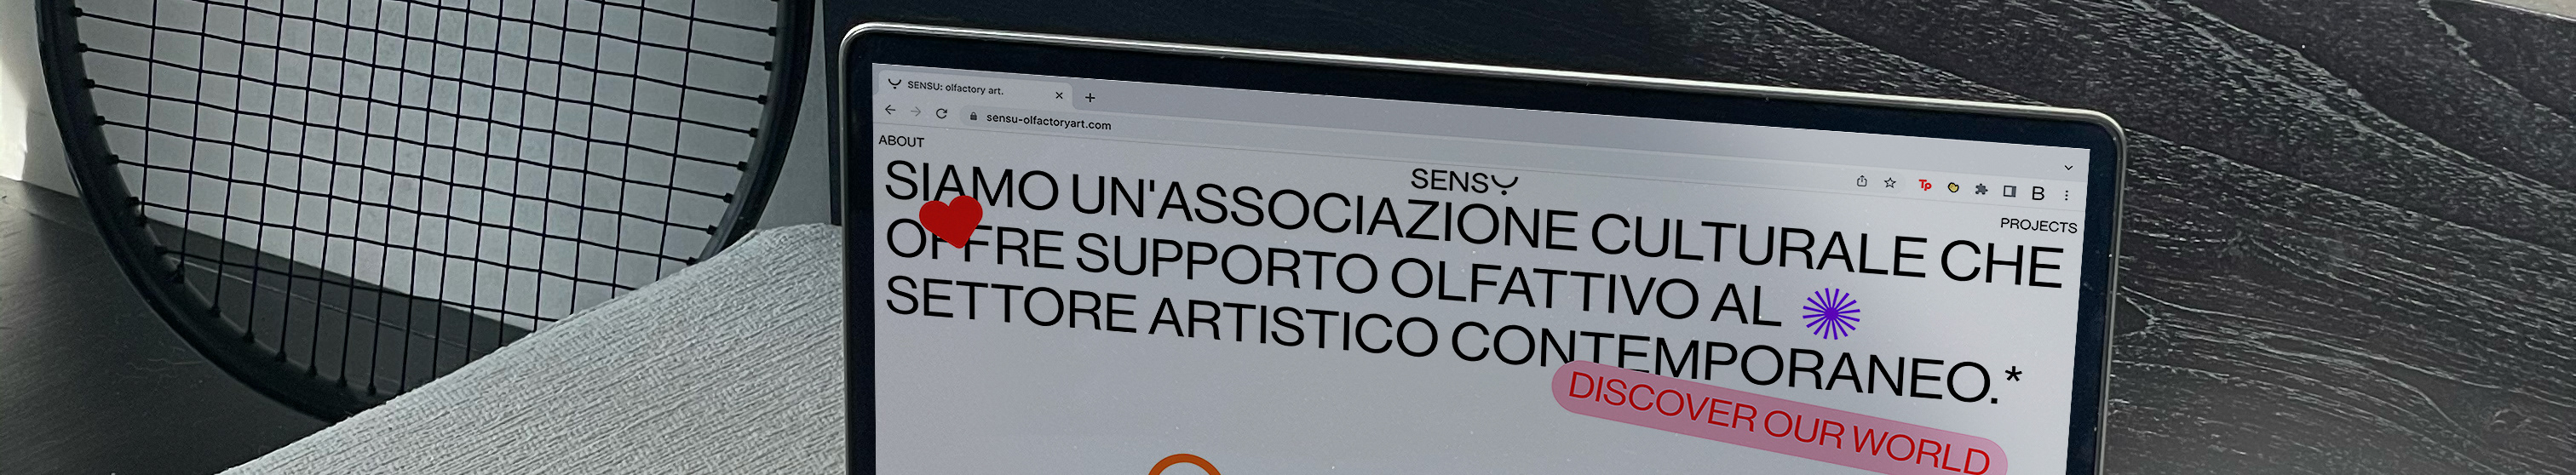 Banner de perfil de Benedetta Ferrari